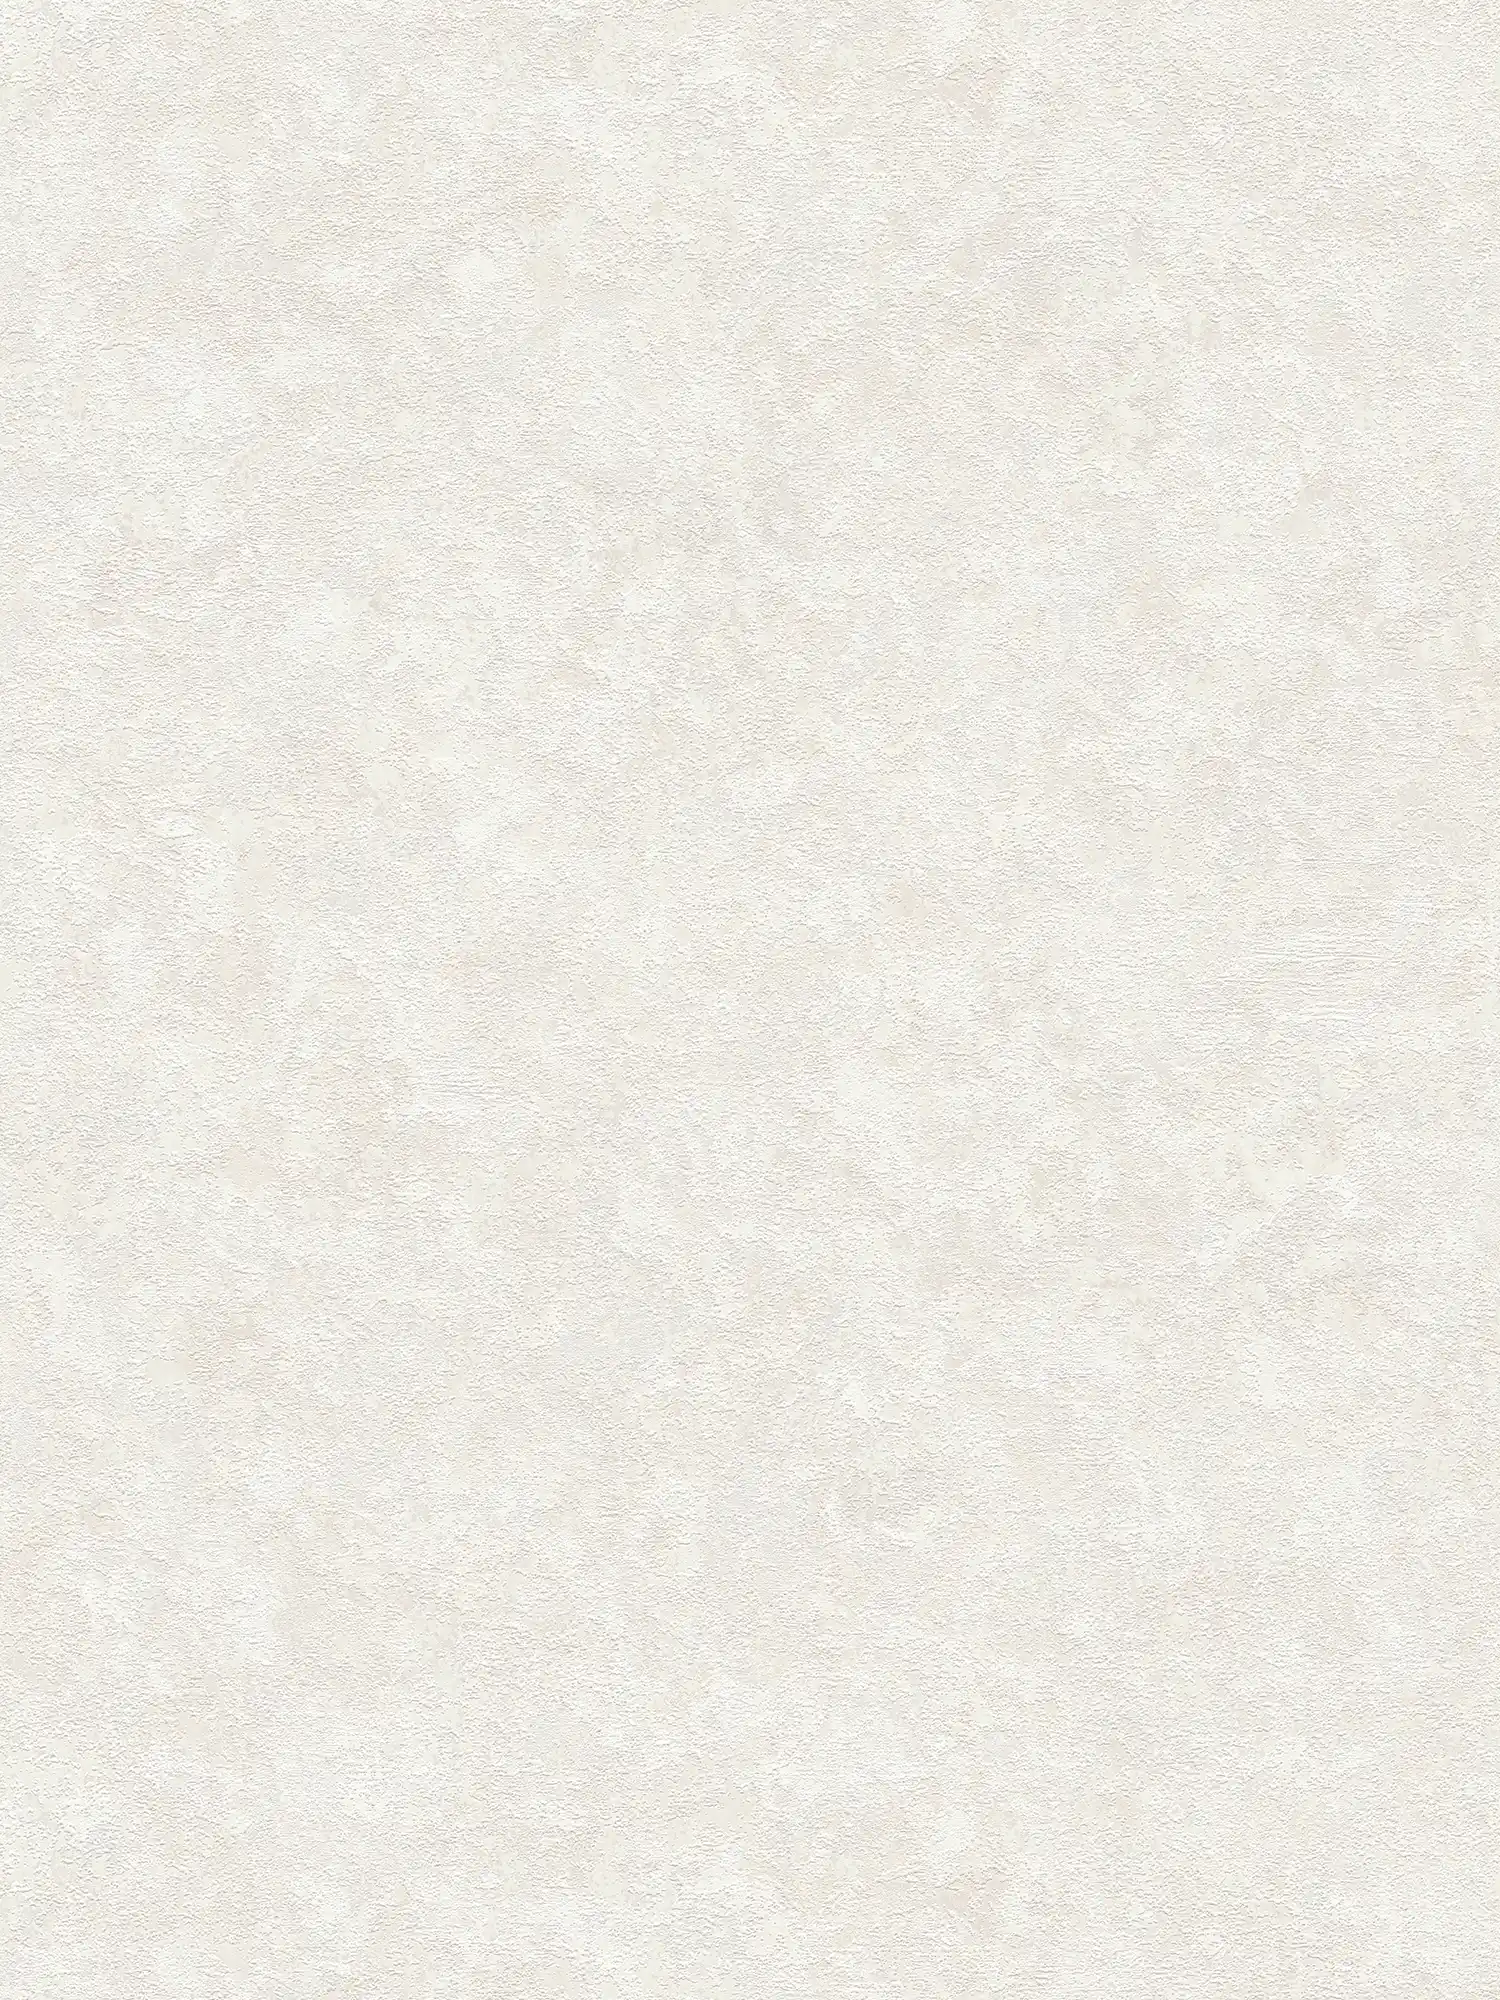 Carta da parati leggera in tessuto non tessuto con motivo strutturato - crema, bianco
